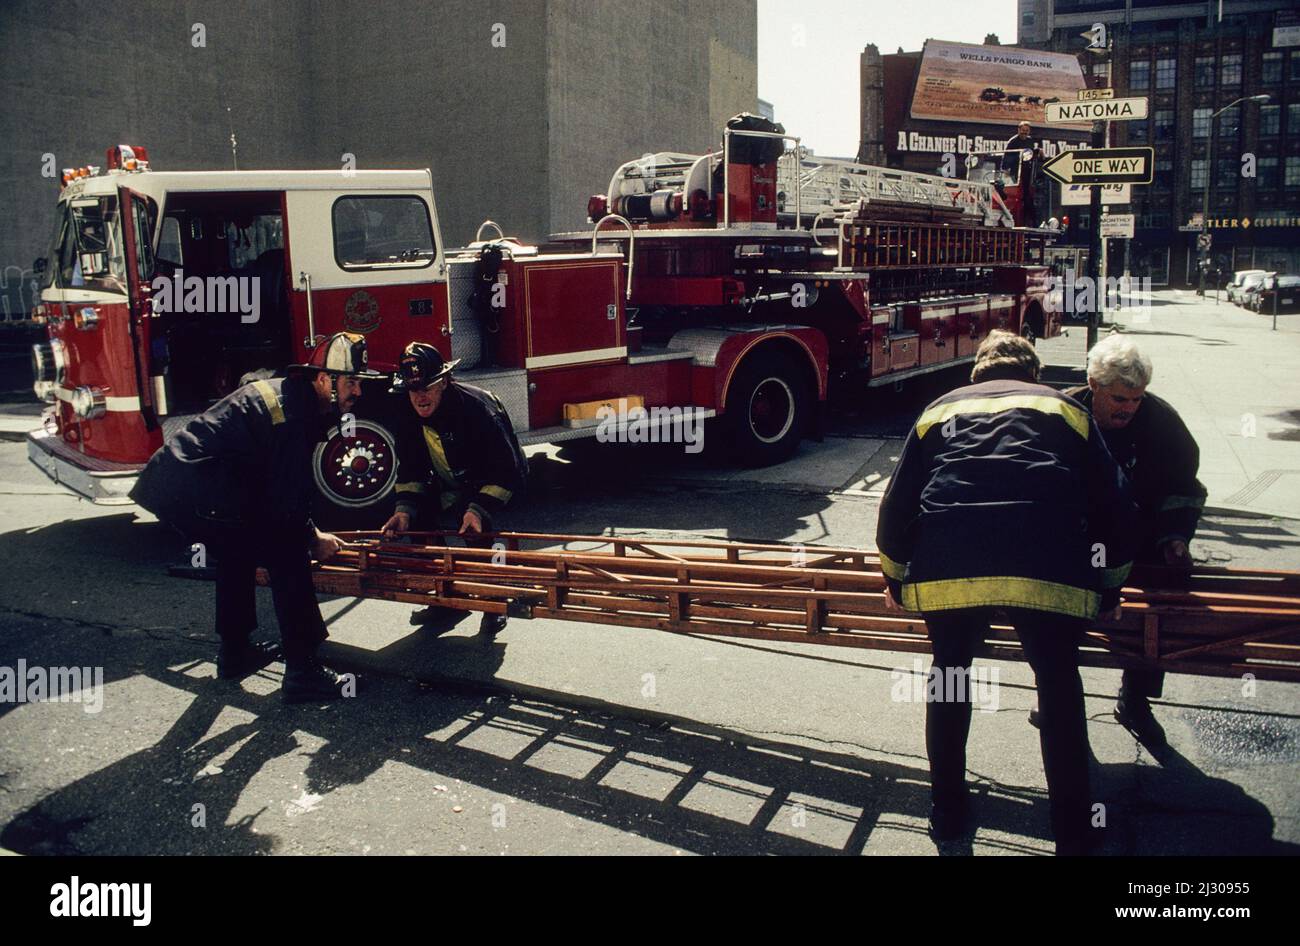 Feuerwehrmänner des San Francisco Fire Department verladen eine Leiter auf ihr Drehleiter-Fahrzeug. - Firefighters of the San Francisco Fire Department loading a ladder on their tiller truck. Stock Photo